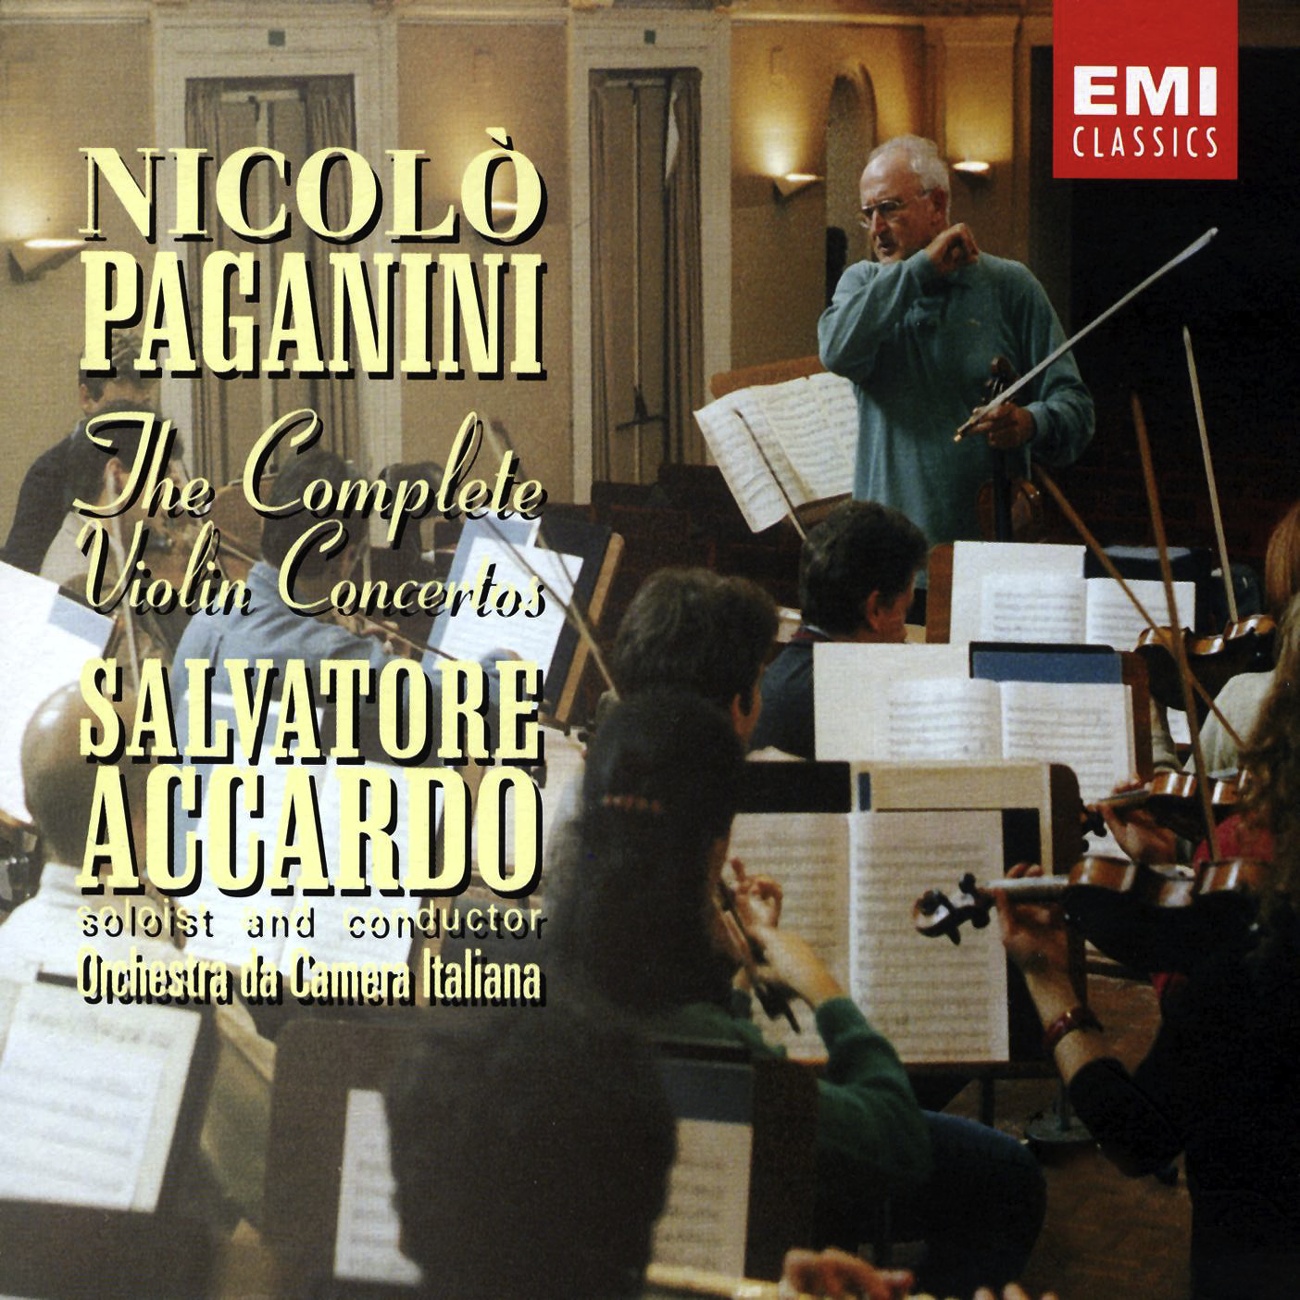 Violin Concerto N.3 in E Major: I. Introduzione Andantino, Allegro Marziale (Cadenza Accardo)